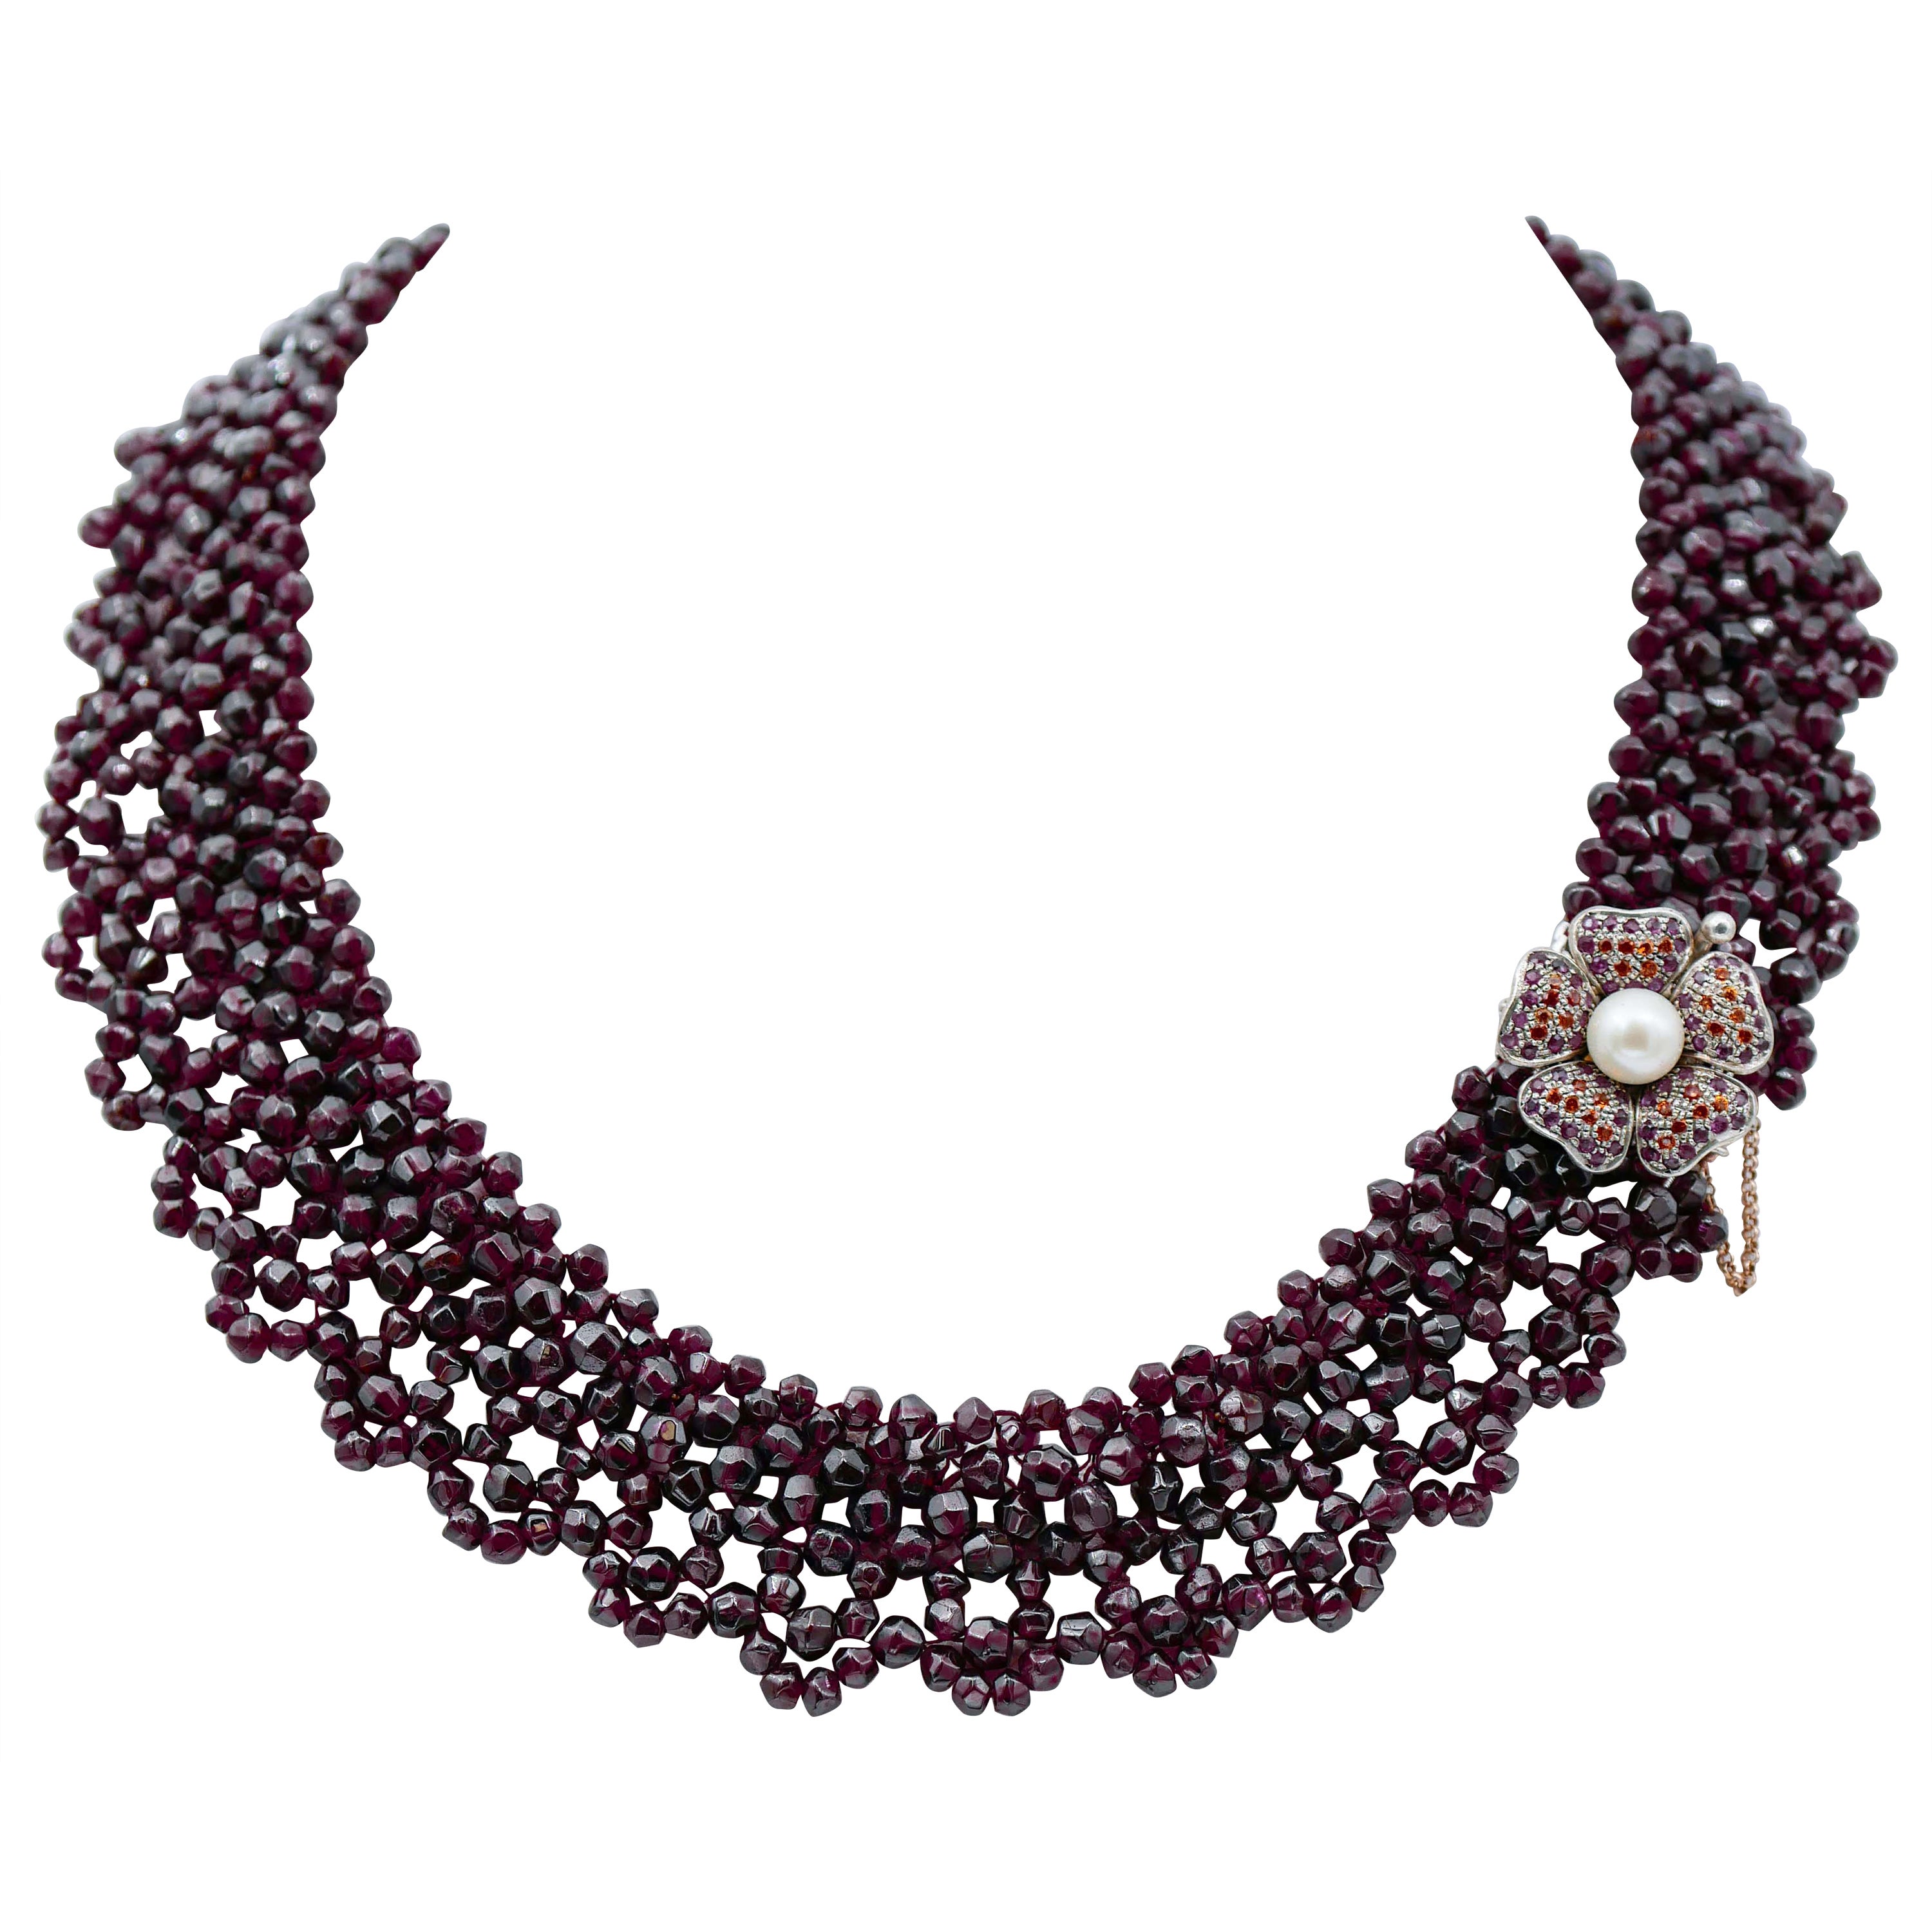 Mehrreihige Halskette mit Rubinen, Granaten, Steinen, Perlen, Roségold und Silber